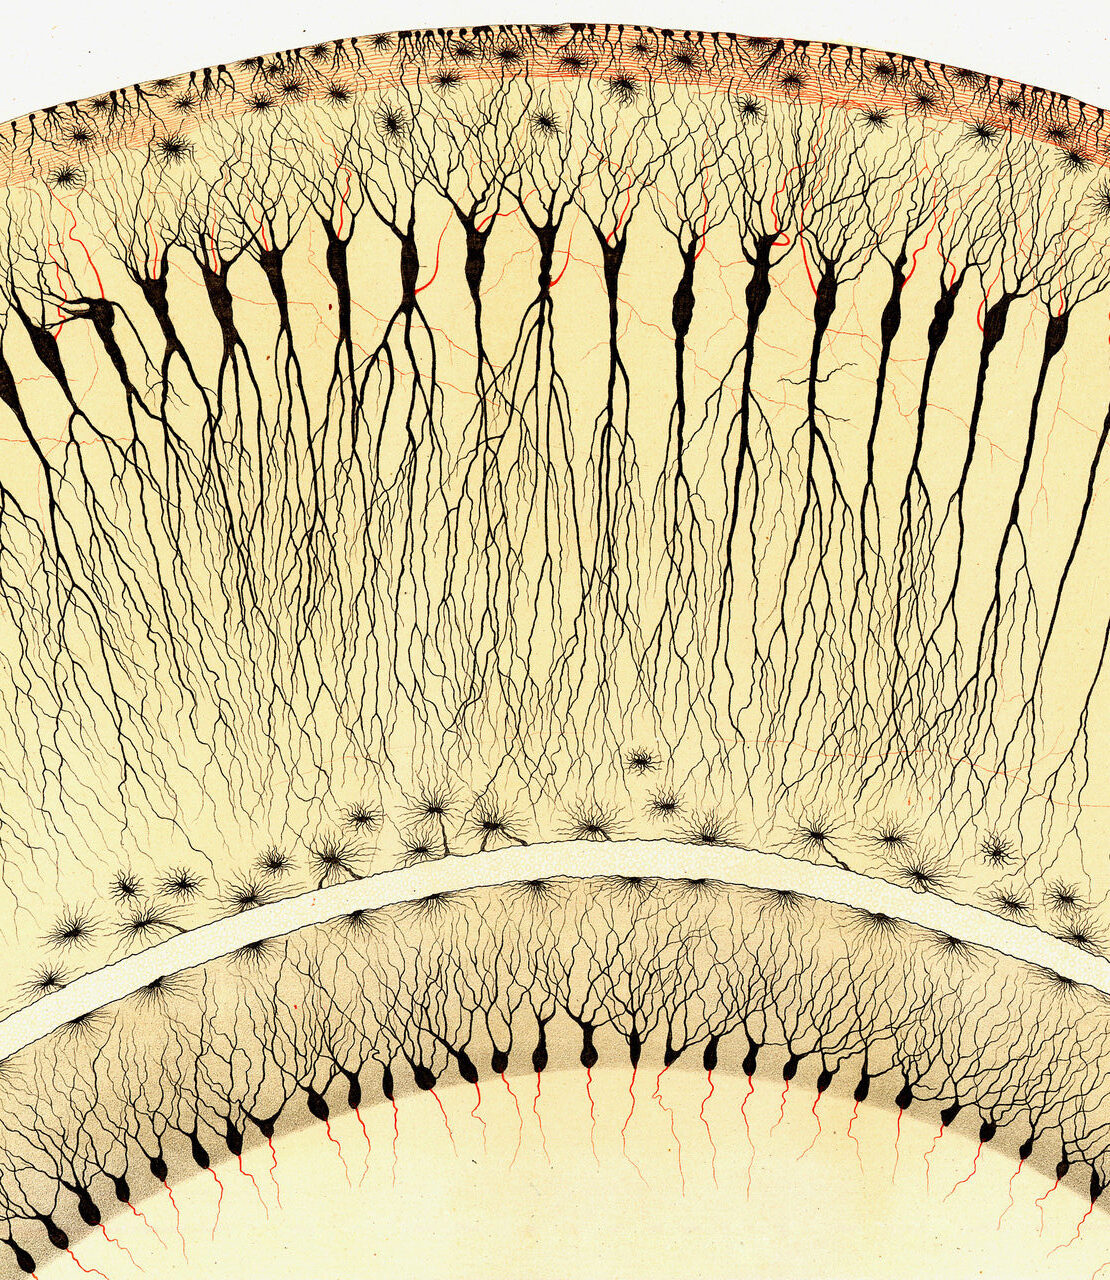 Detailed illustration of nerve cells